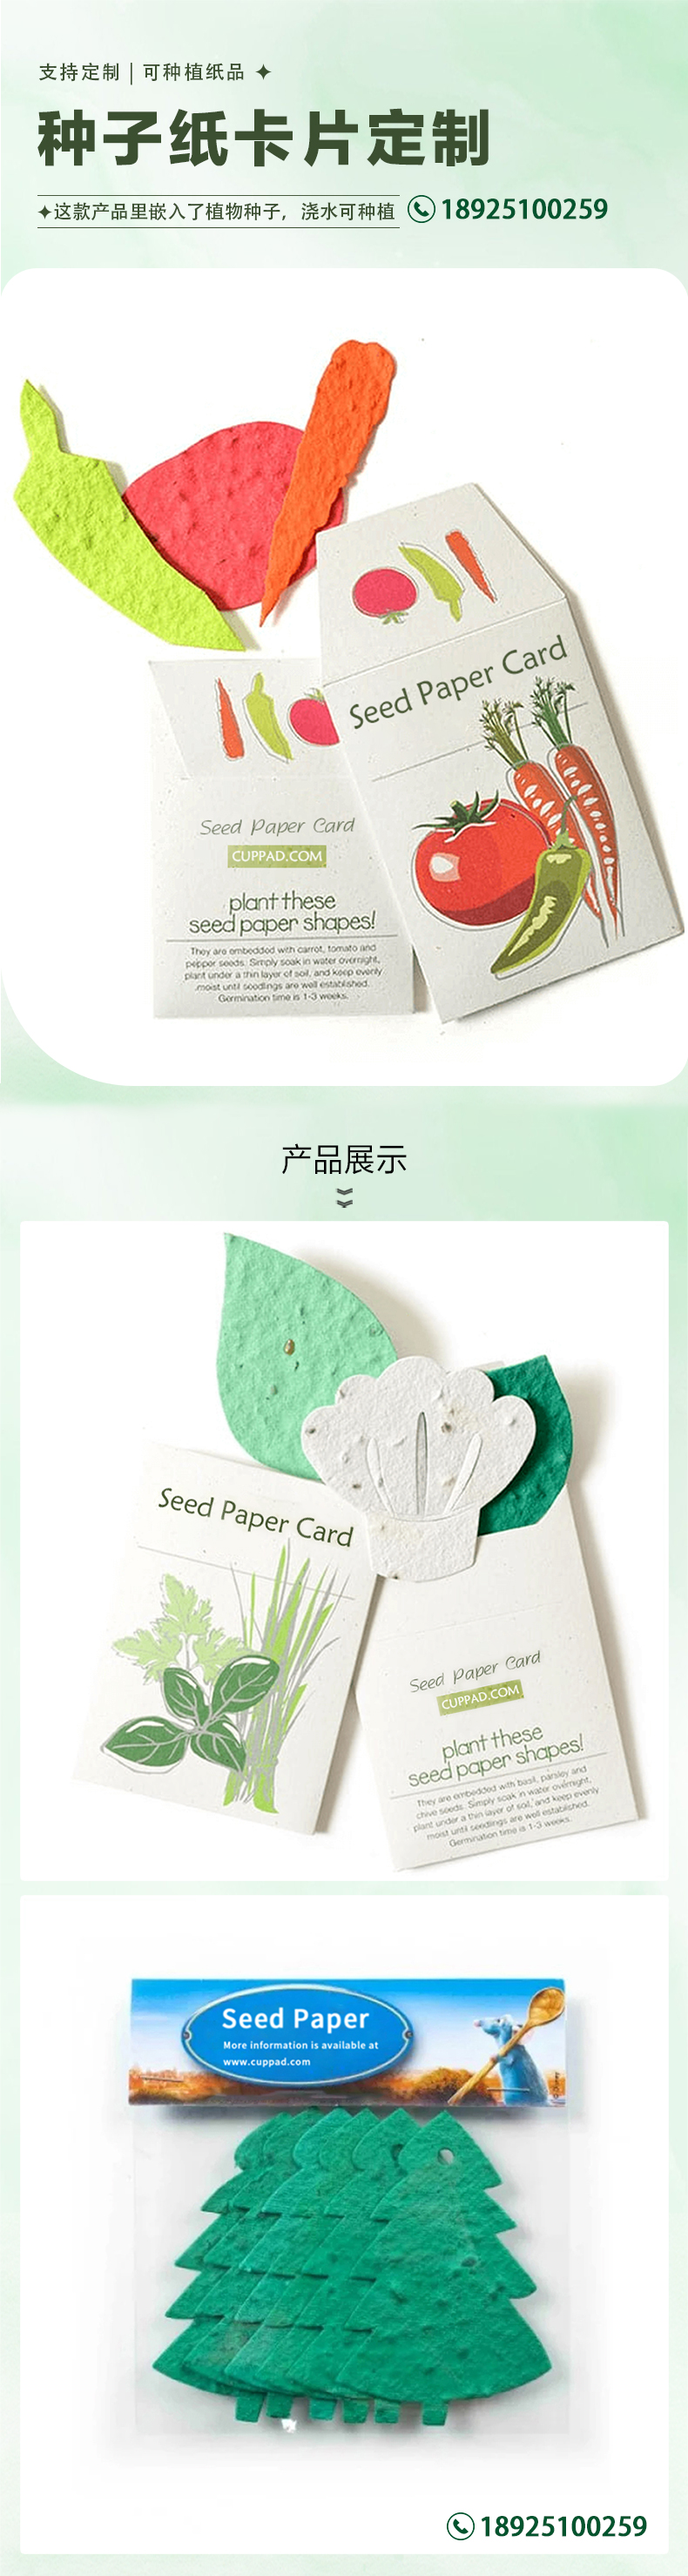 0219种子纸卡片-中文.jpg